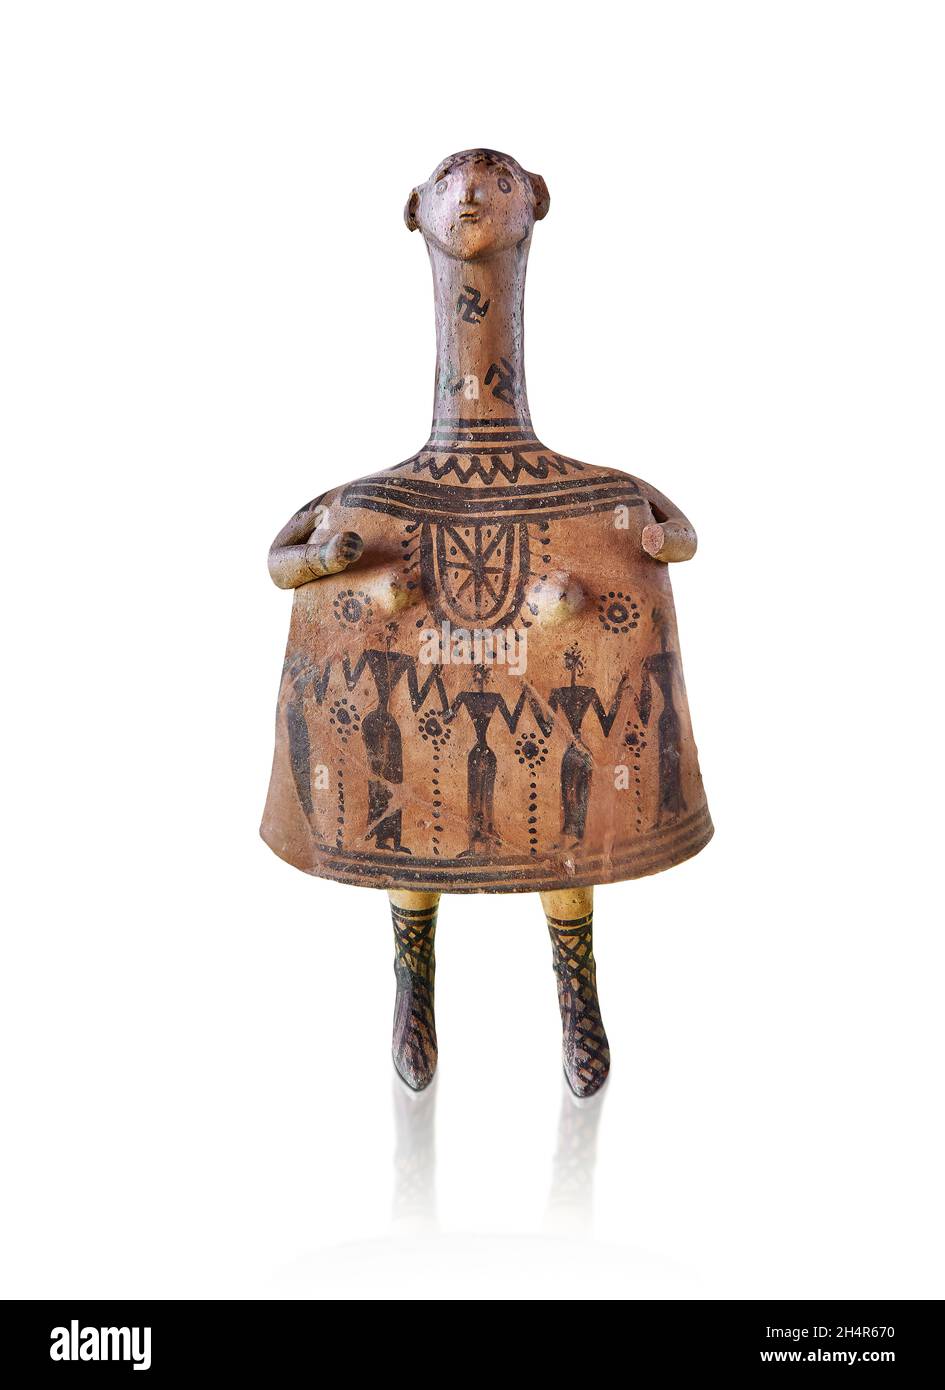 Geometrische griechische Terrakotta-Figur, bekannt als Glocke Idol, hergestellt in Béotie Griechenland, um 700 v. Chr., Theben, Ton. Louvre Museum Inv CA 263. Der Ton “Bell Stockfoto